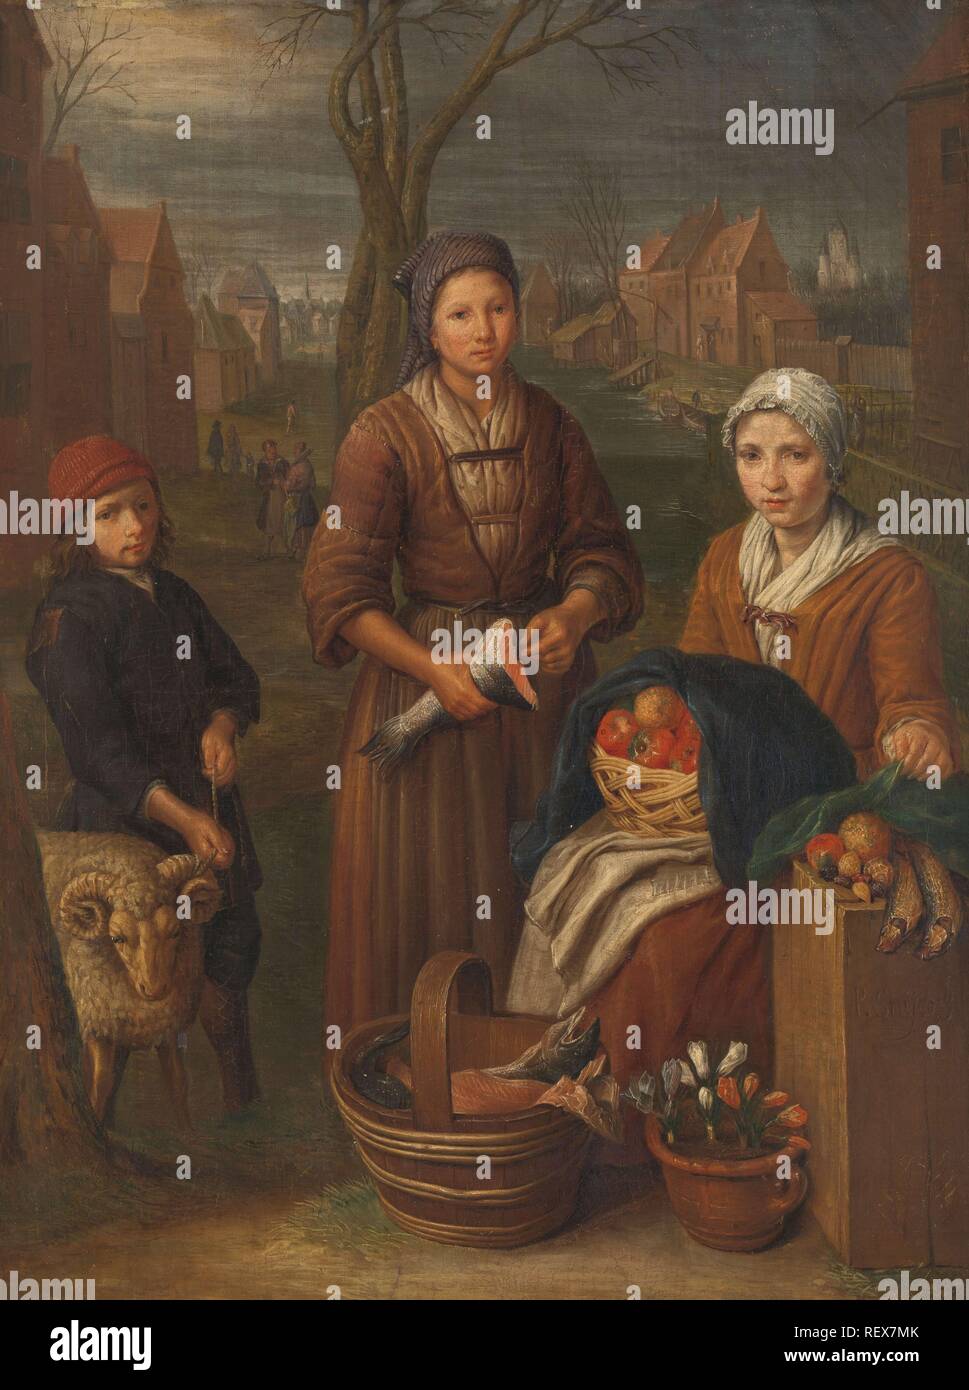 Die Frau, die Hausierer. Datierung: 1700 - 1752. Maße: H 59 cm x W 44 cm; d 8 cm. Museum: Rijksmuseum, Amsterdam. Autor: Peter Duez. Stockfoto